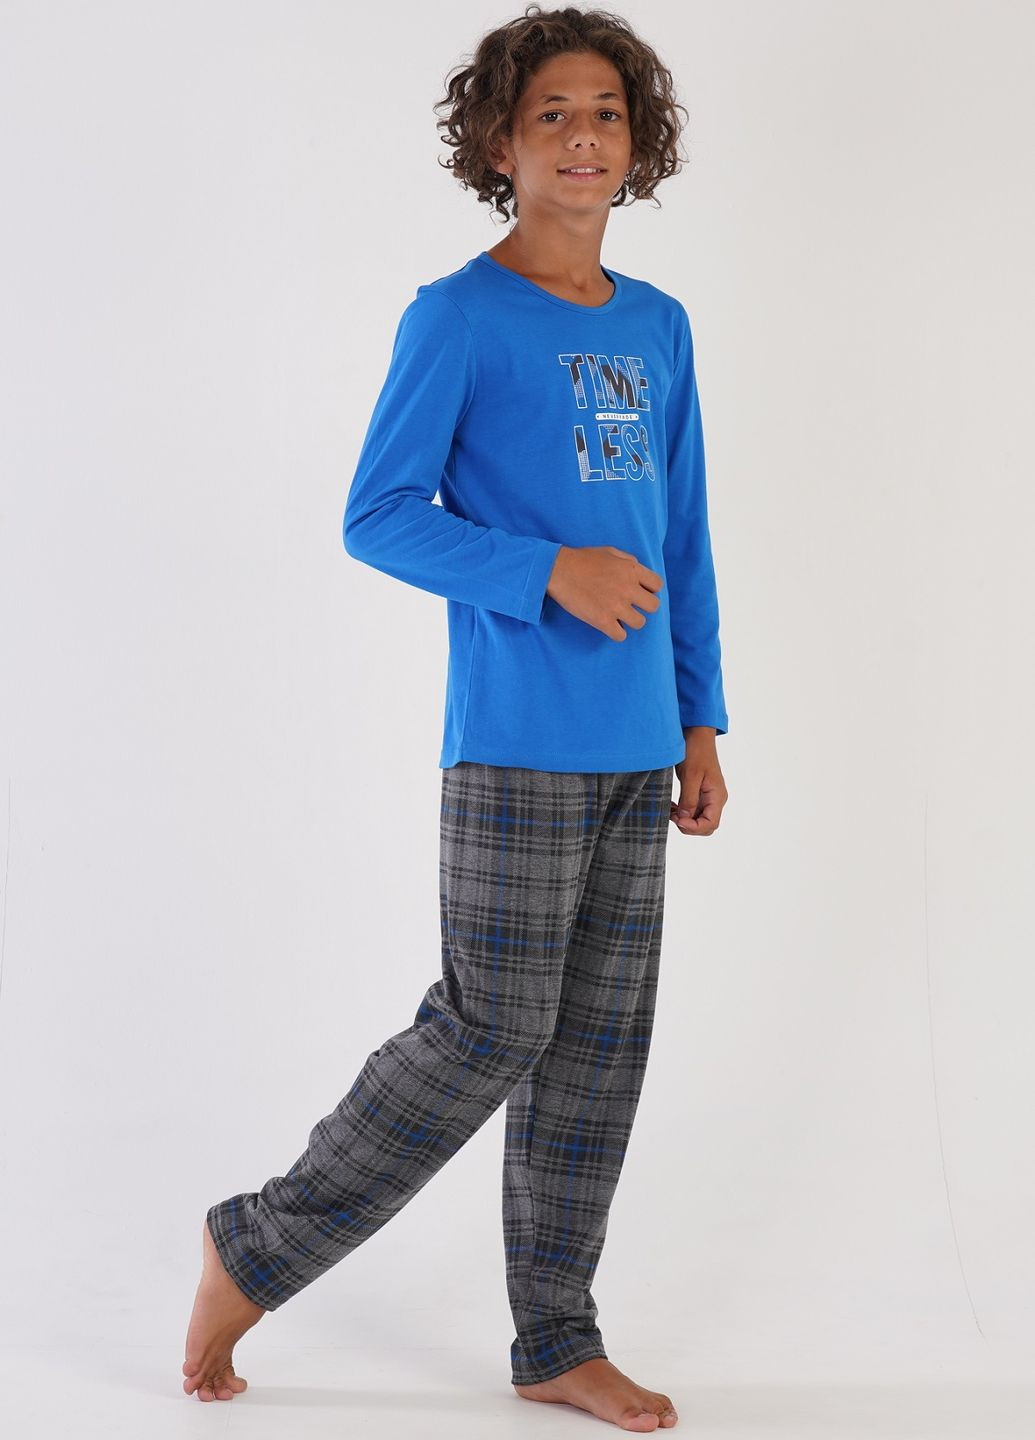 Синяя всесезон пижама подростковая (лонгслив, штаны) лонгслив + брюки Vienetta